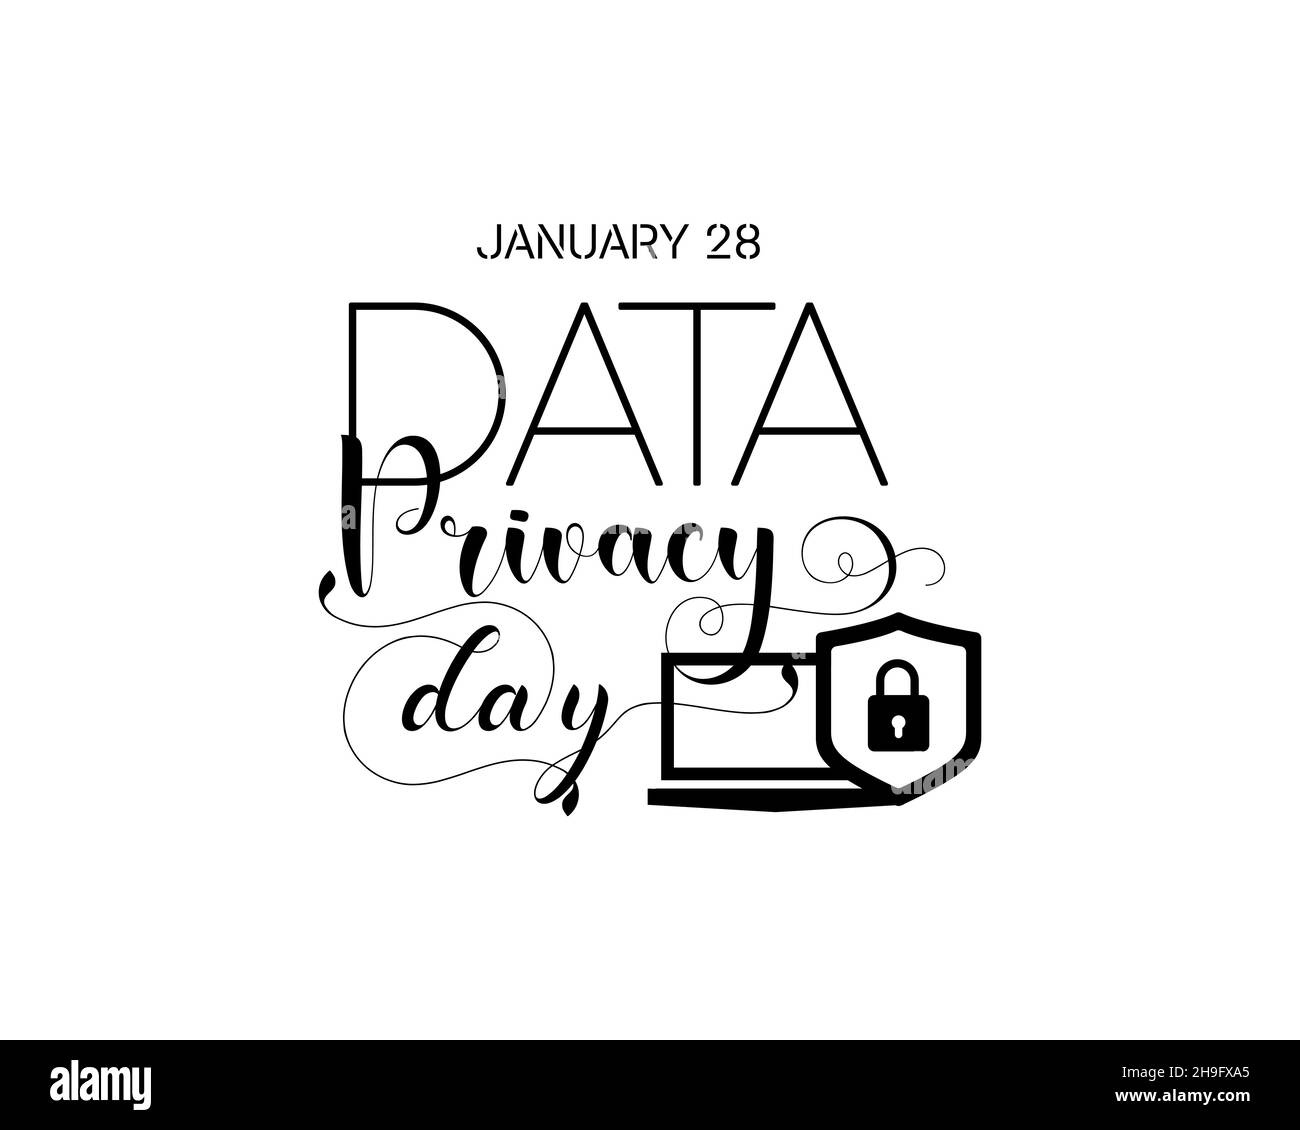 Janvier 28 - Calligraphie style lettrage à la main conception pour la journée de confidentialité des données.Modèle vectoriel pour bannière, affiche, chemise, carte. Illustration de Vecteur